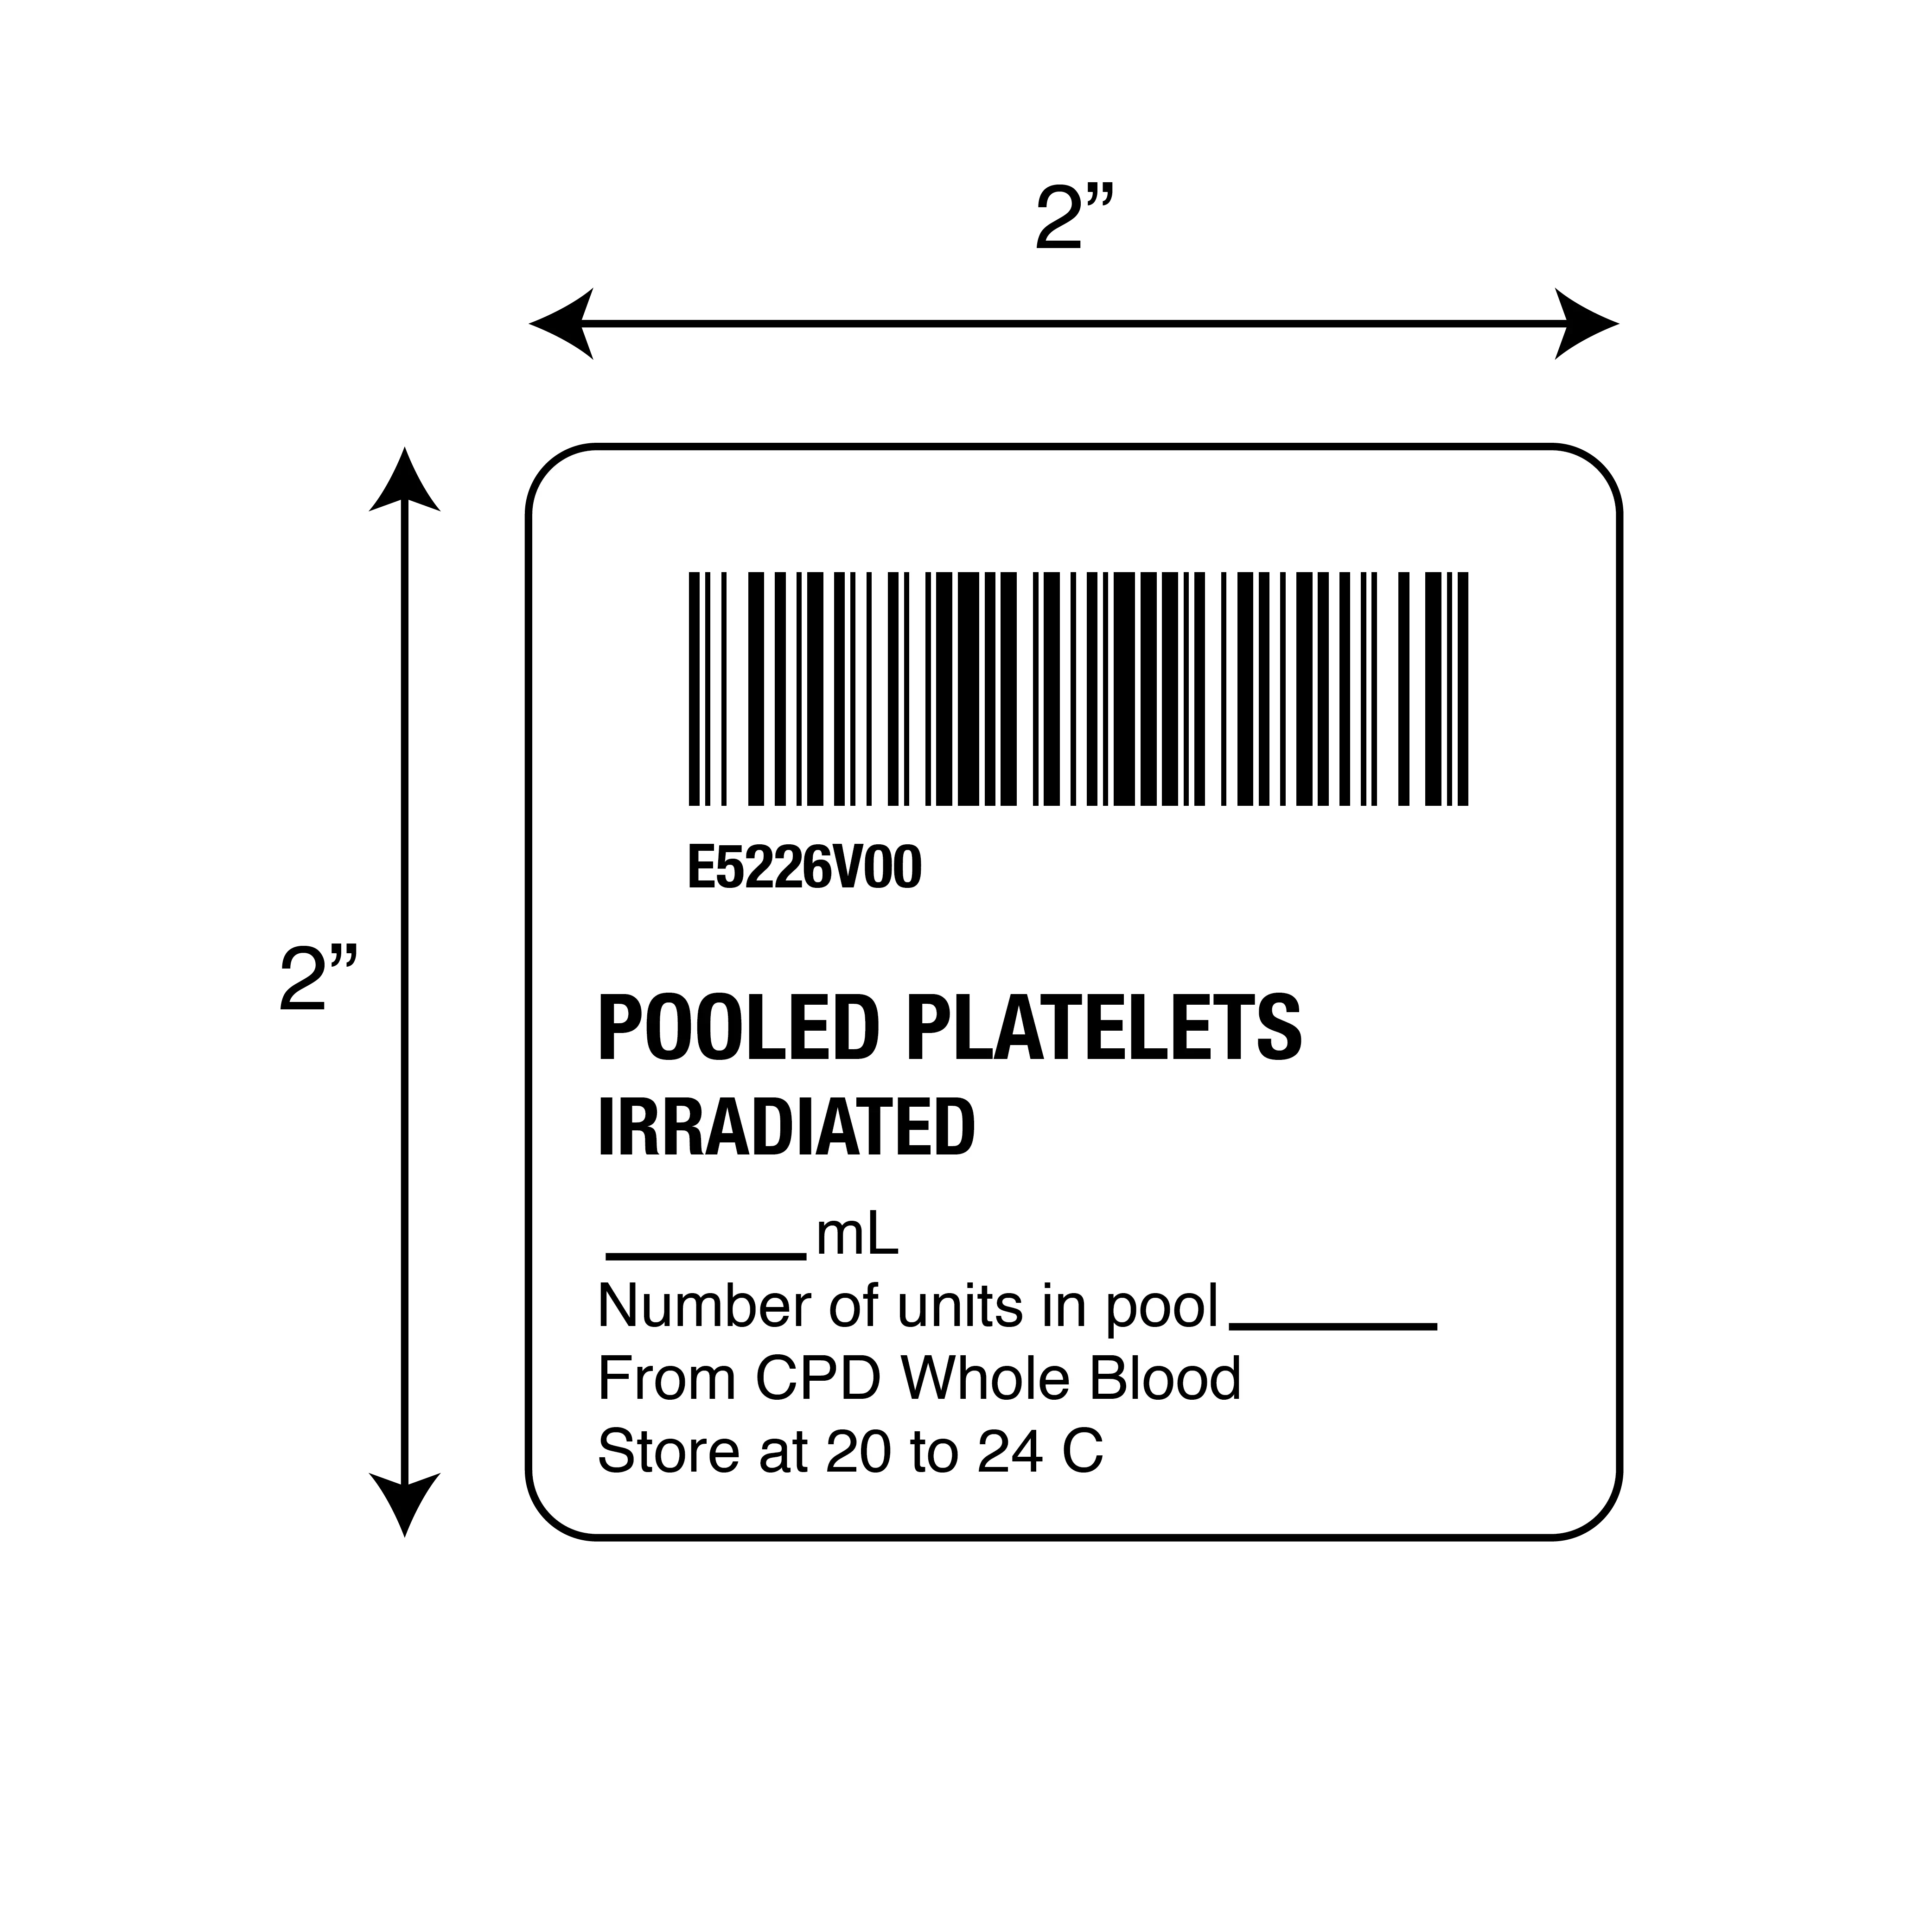 ISBT 128 Pooled Platelets Irradiated